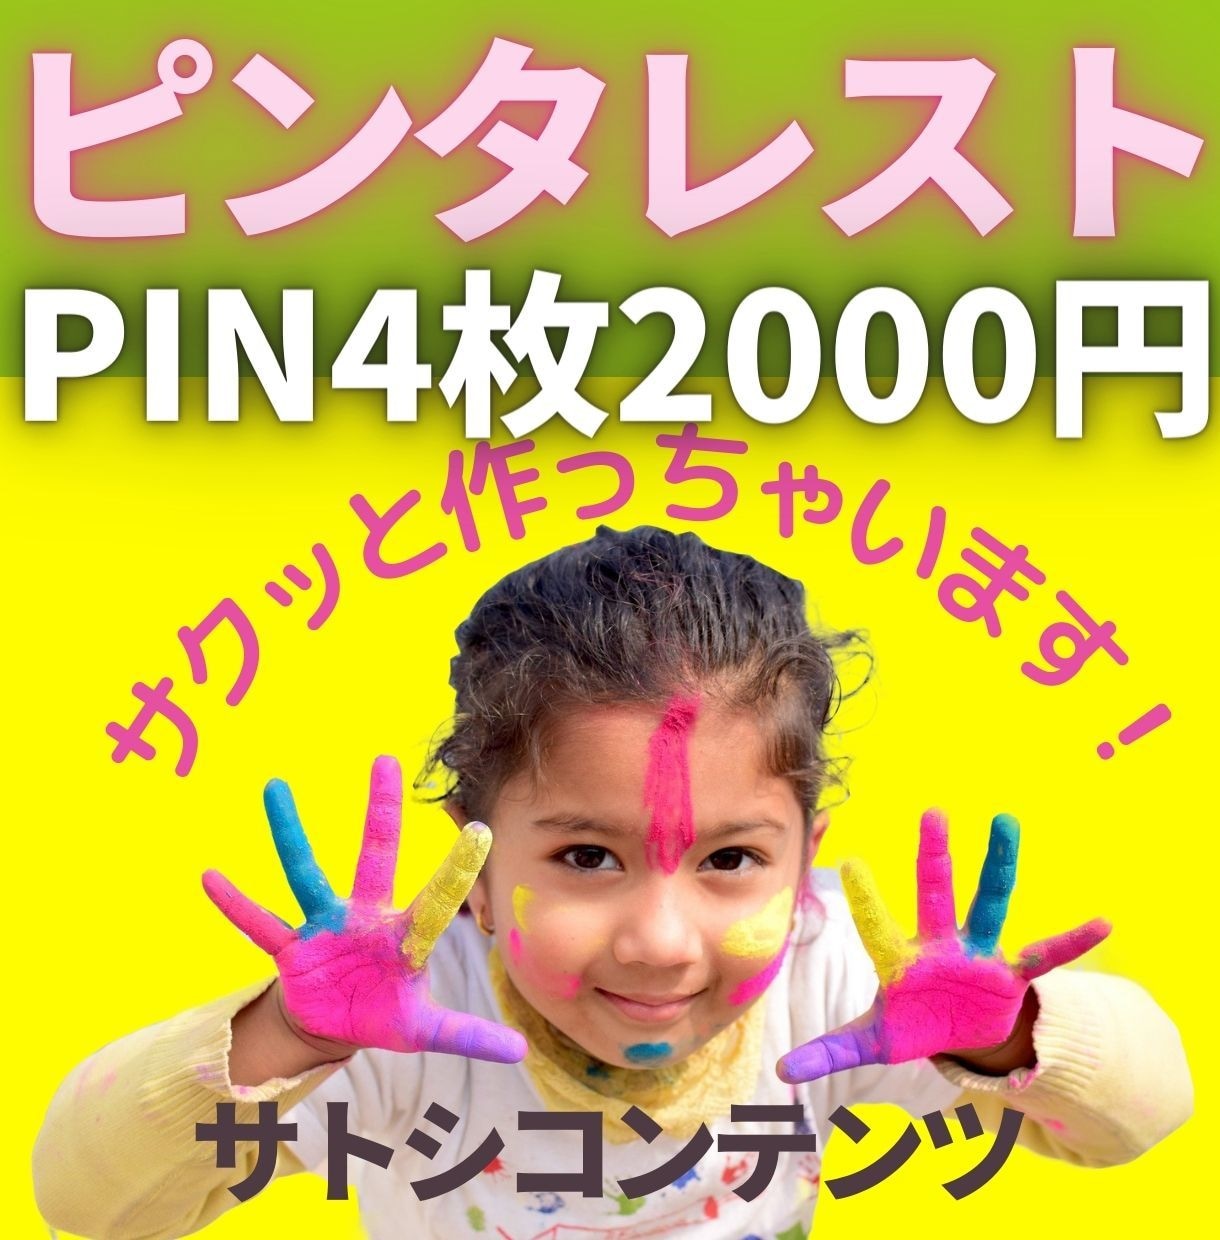 ピンタレストのピンを4枚2000円で作成します 初心者の方へ「PIN投稿方法」PDFプレゼント！ イメージ1